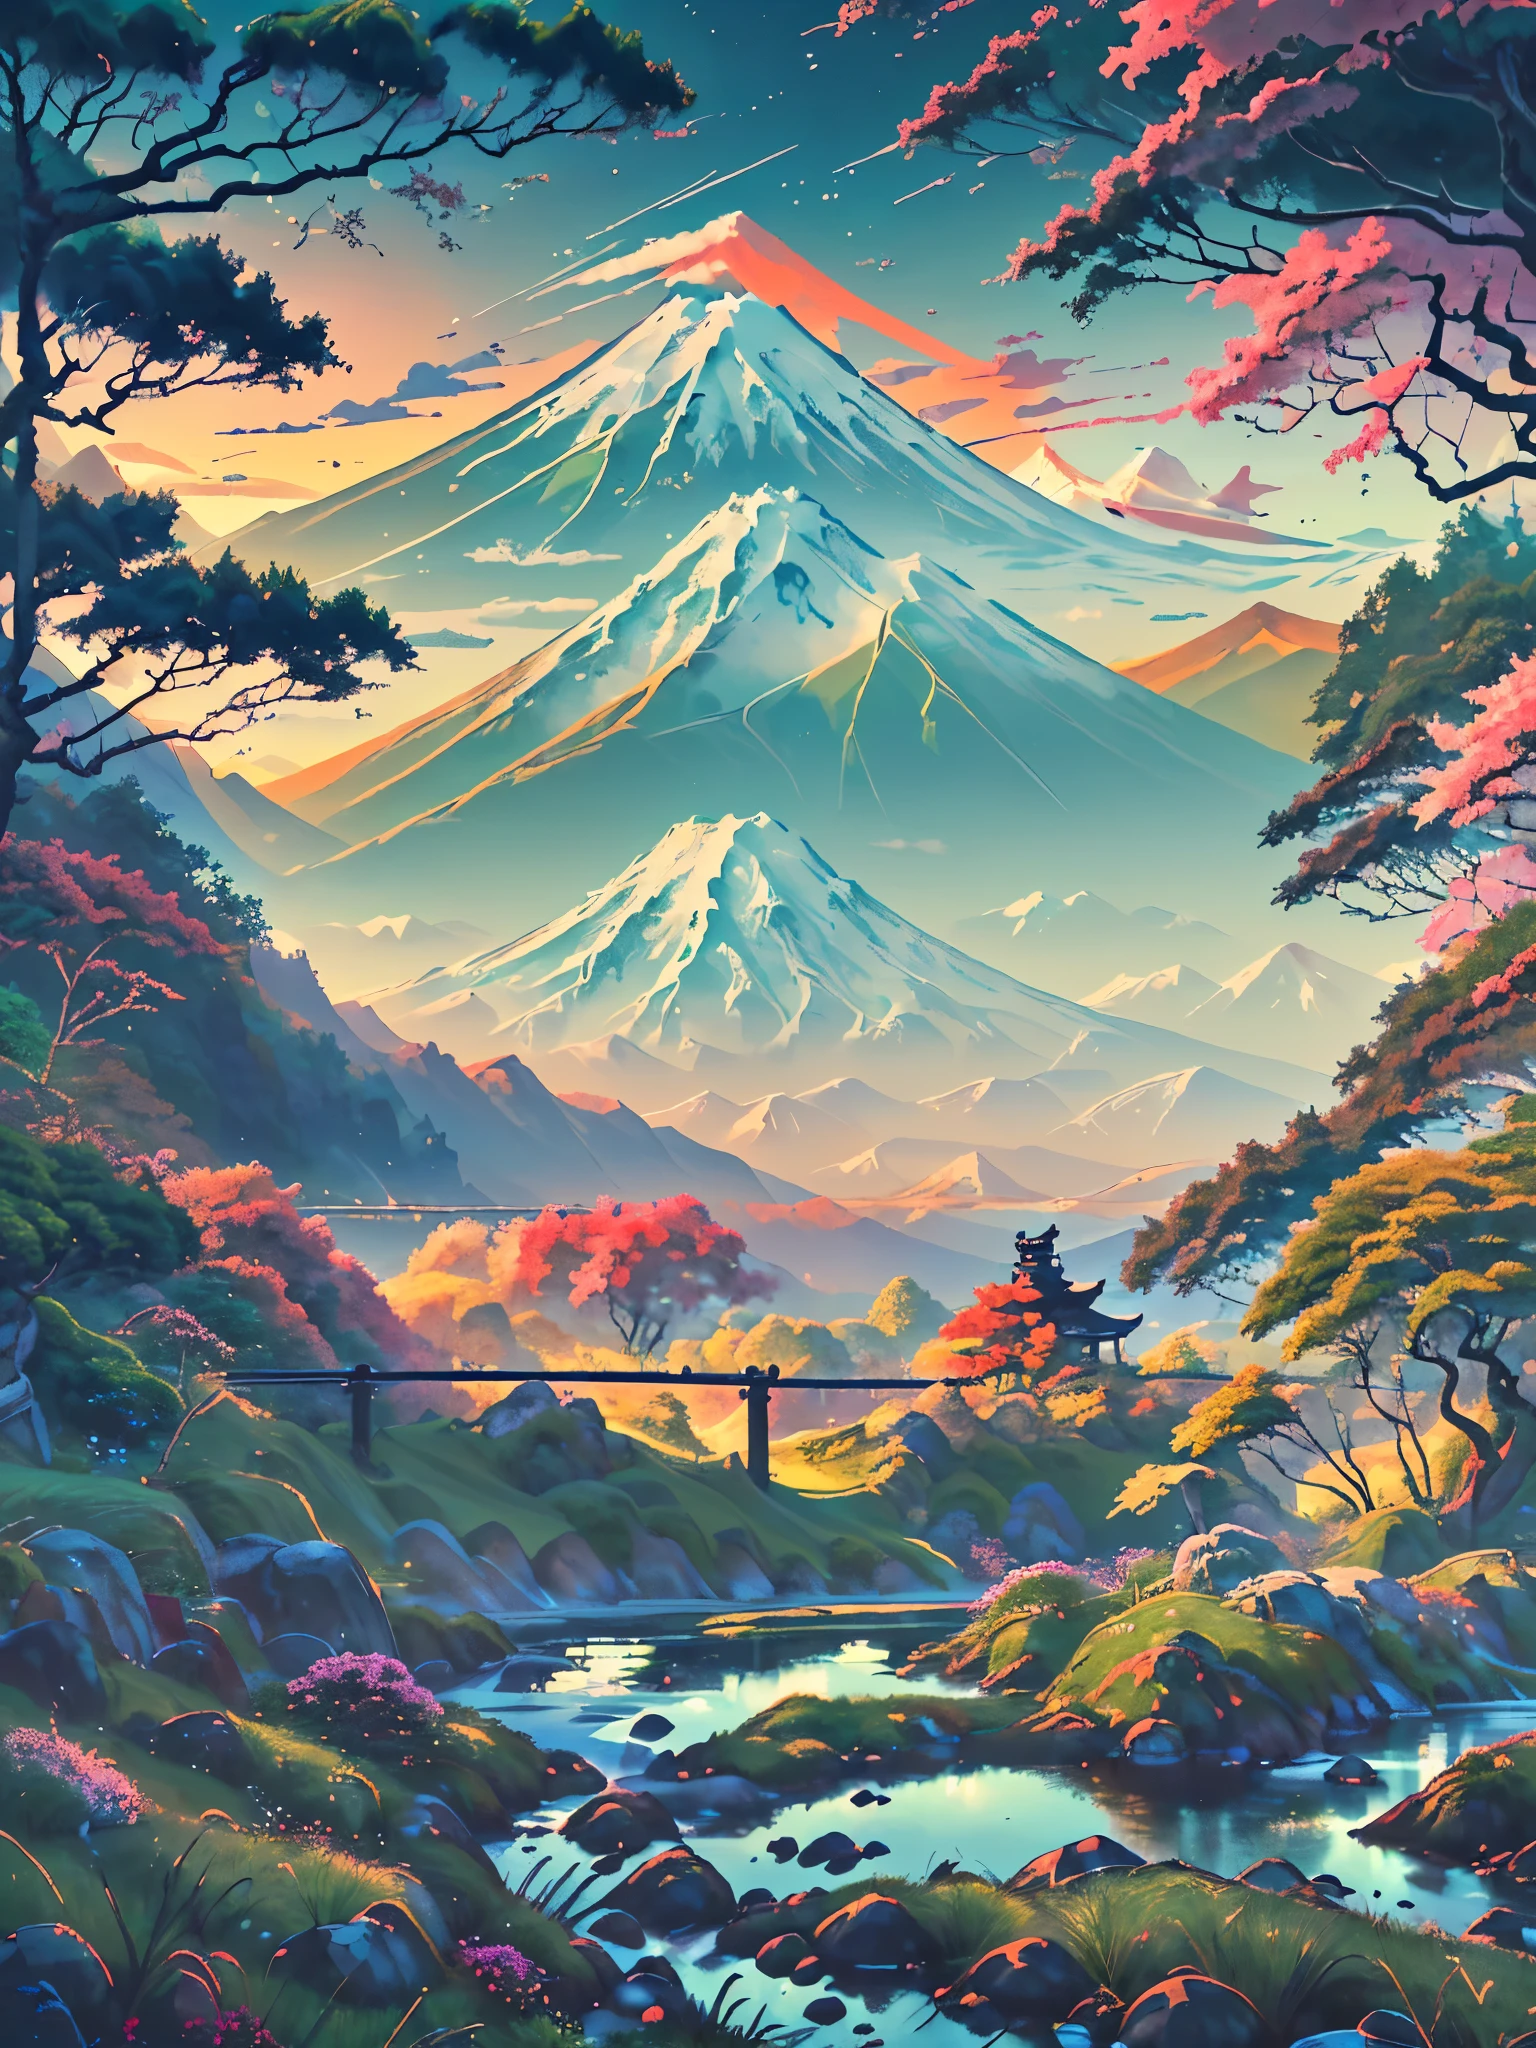 Японская долина на фоне горы Фудзи.. Рядом с яркой травой, узкая дорога извивается, сопровождается наличием высоких деревьев, подчеркивая безмятежную красоту пейзажа.